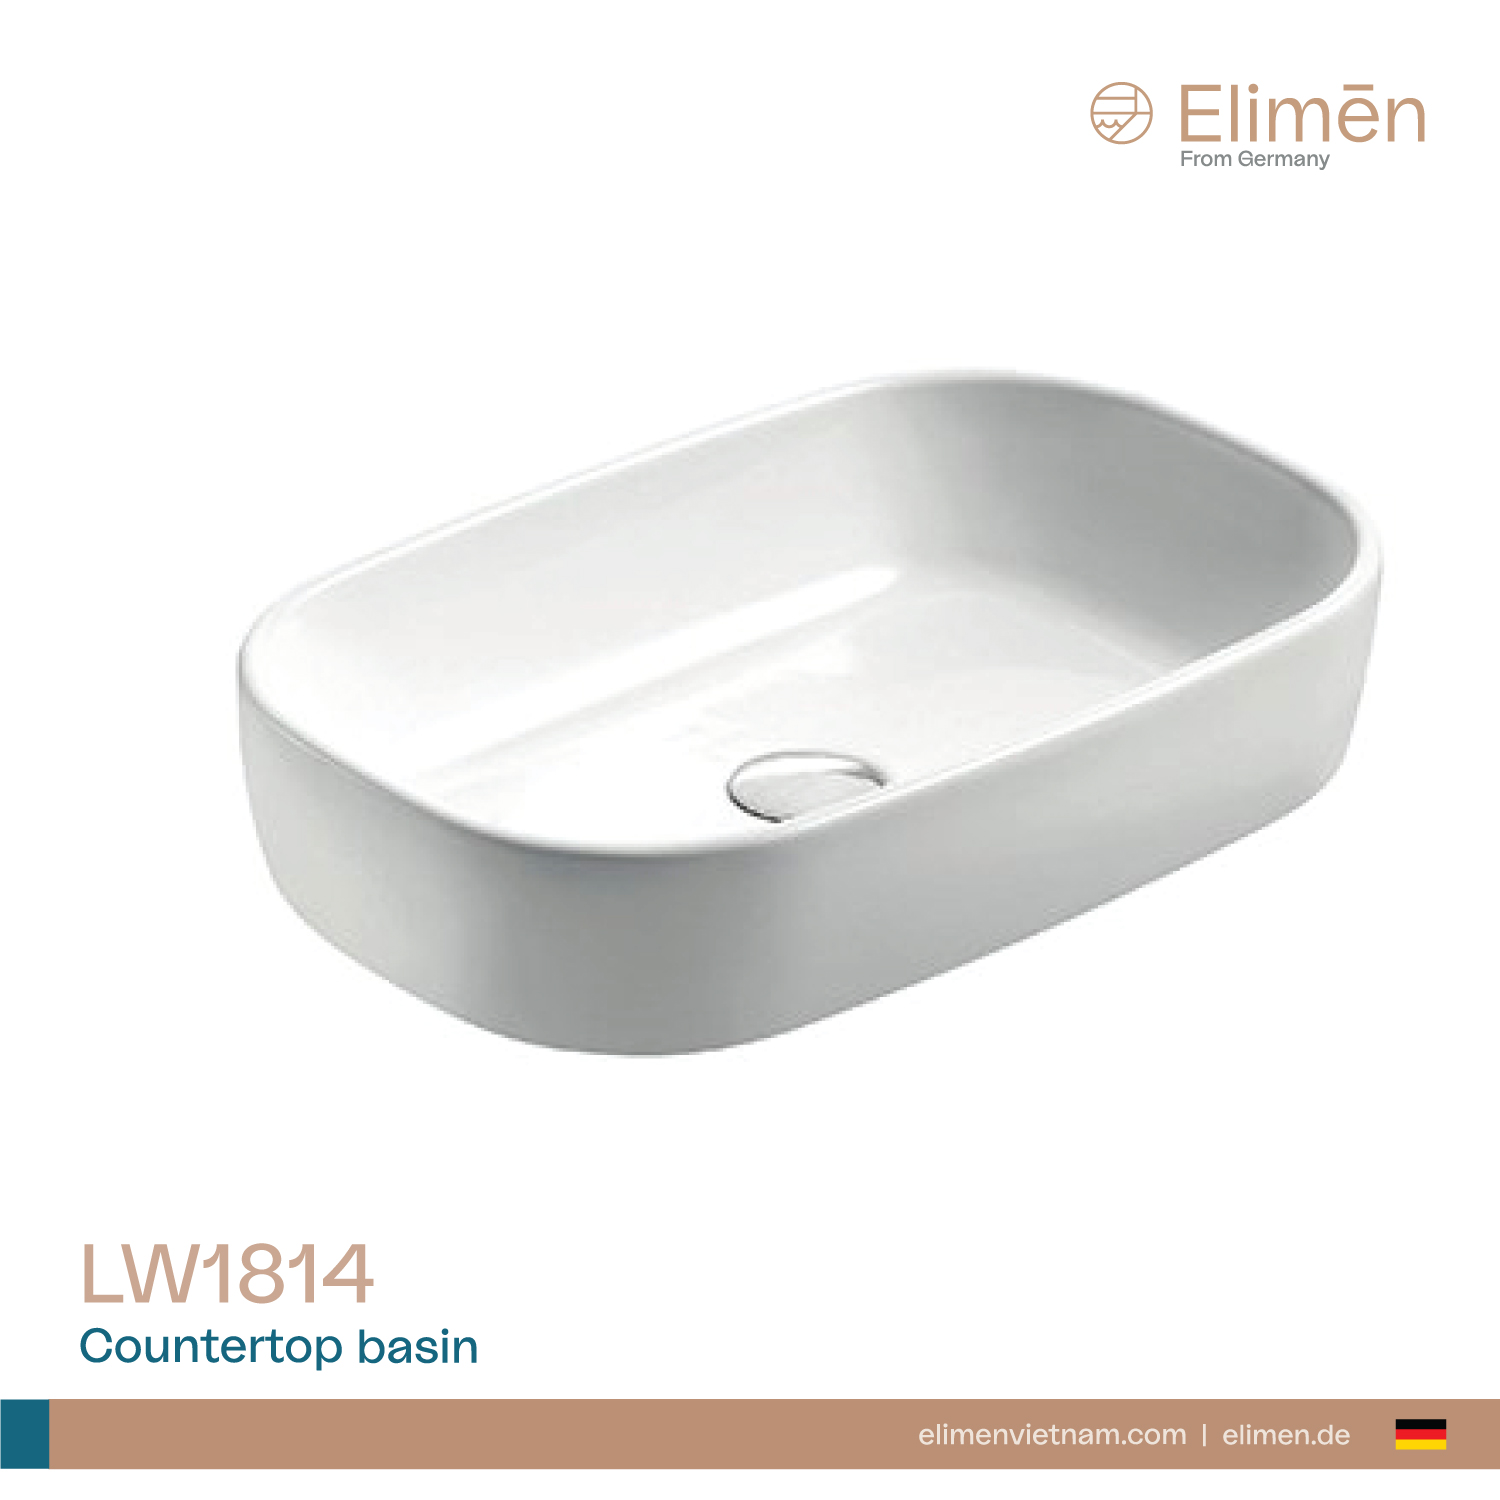 Elimen Countertop basin - Code LW1814